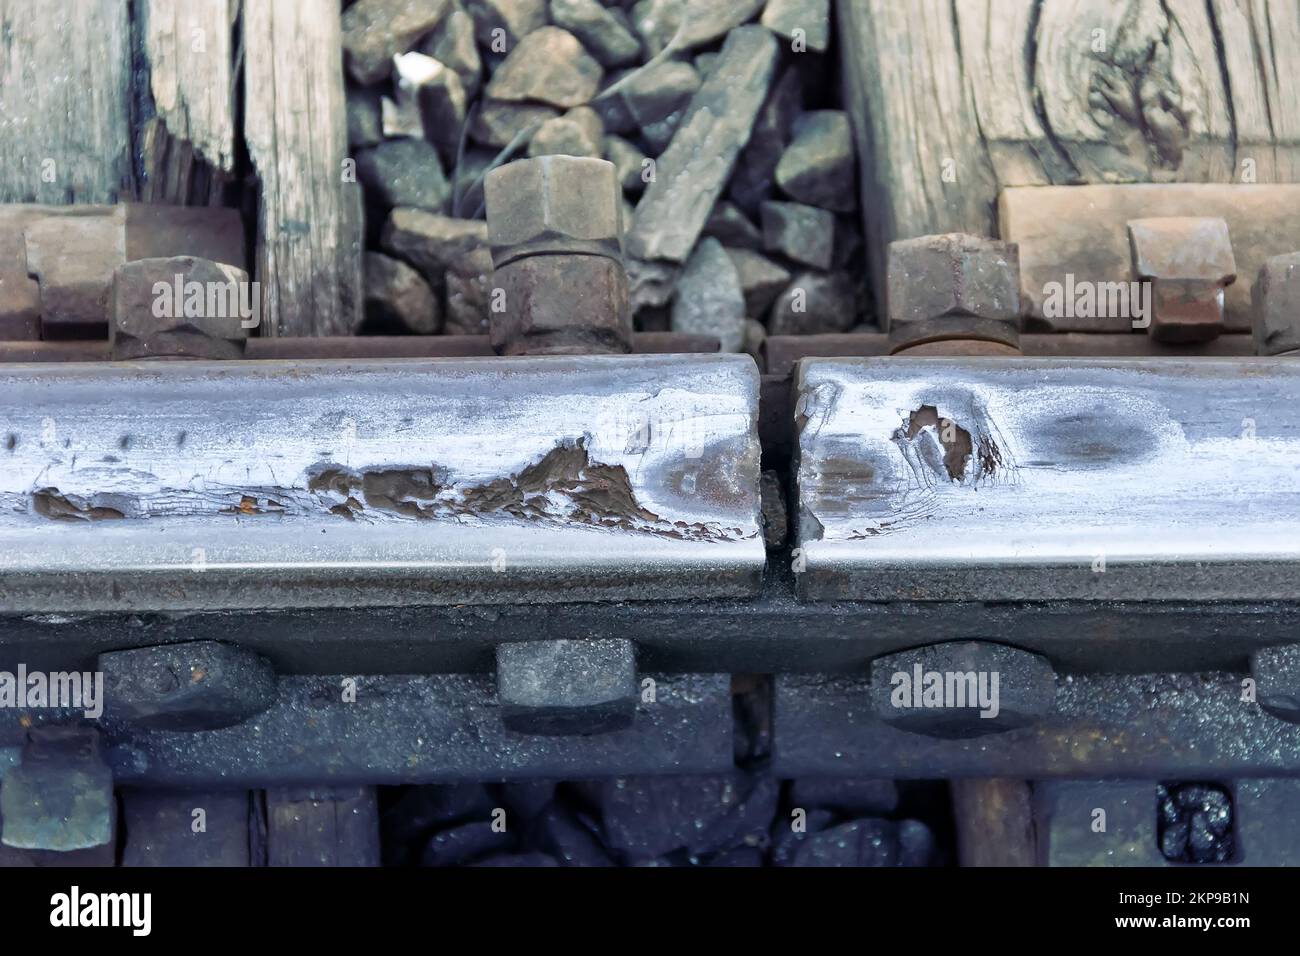 Usure et corrosion des rails en acier au niveau de la jonction (espace d'expansion), absence de profondeur d'usure de la tête de rail, écrasement du rail. Entreprise ferroviaire Banque D'Images